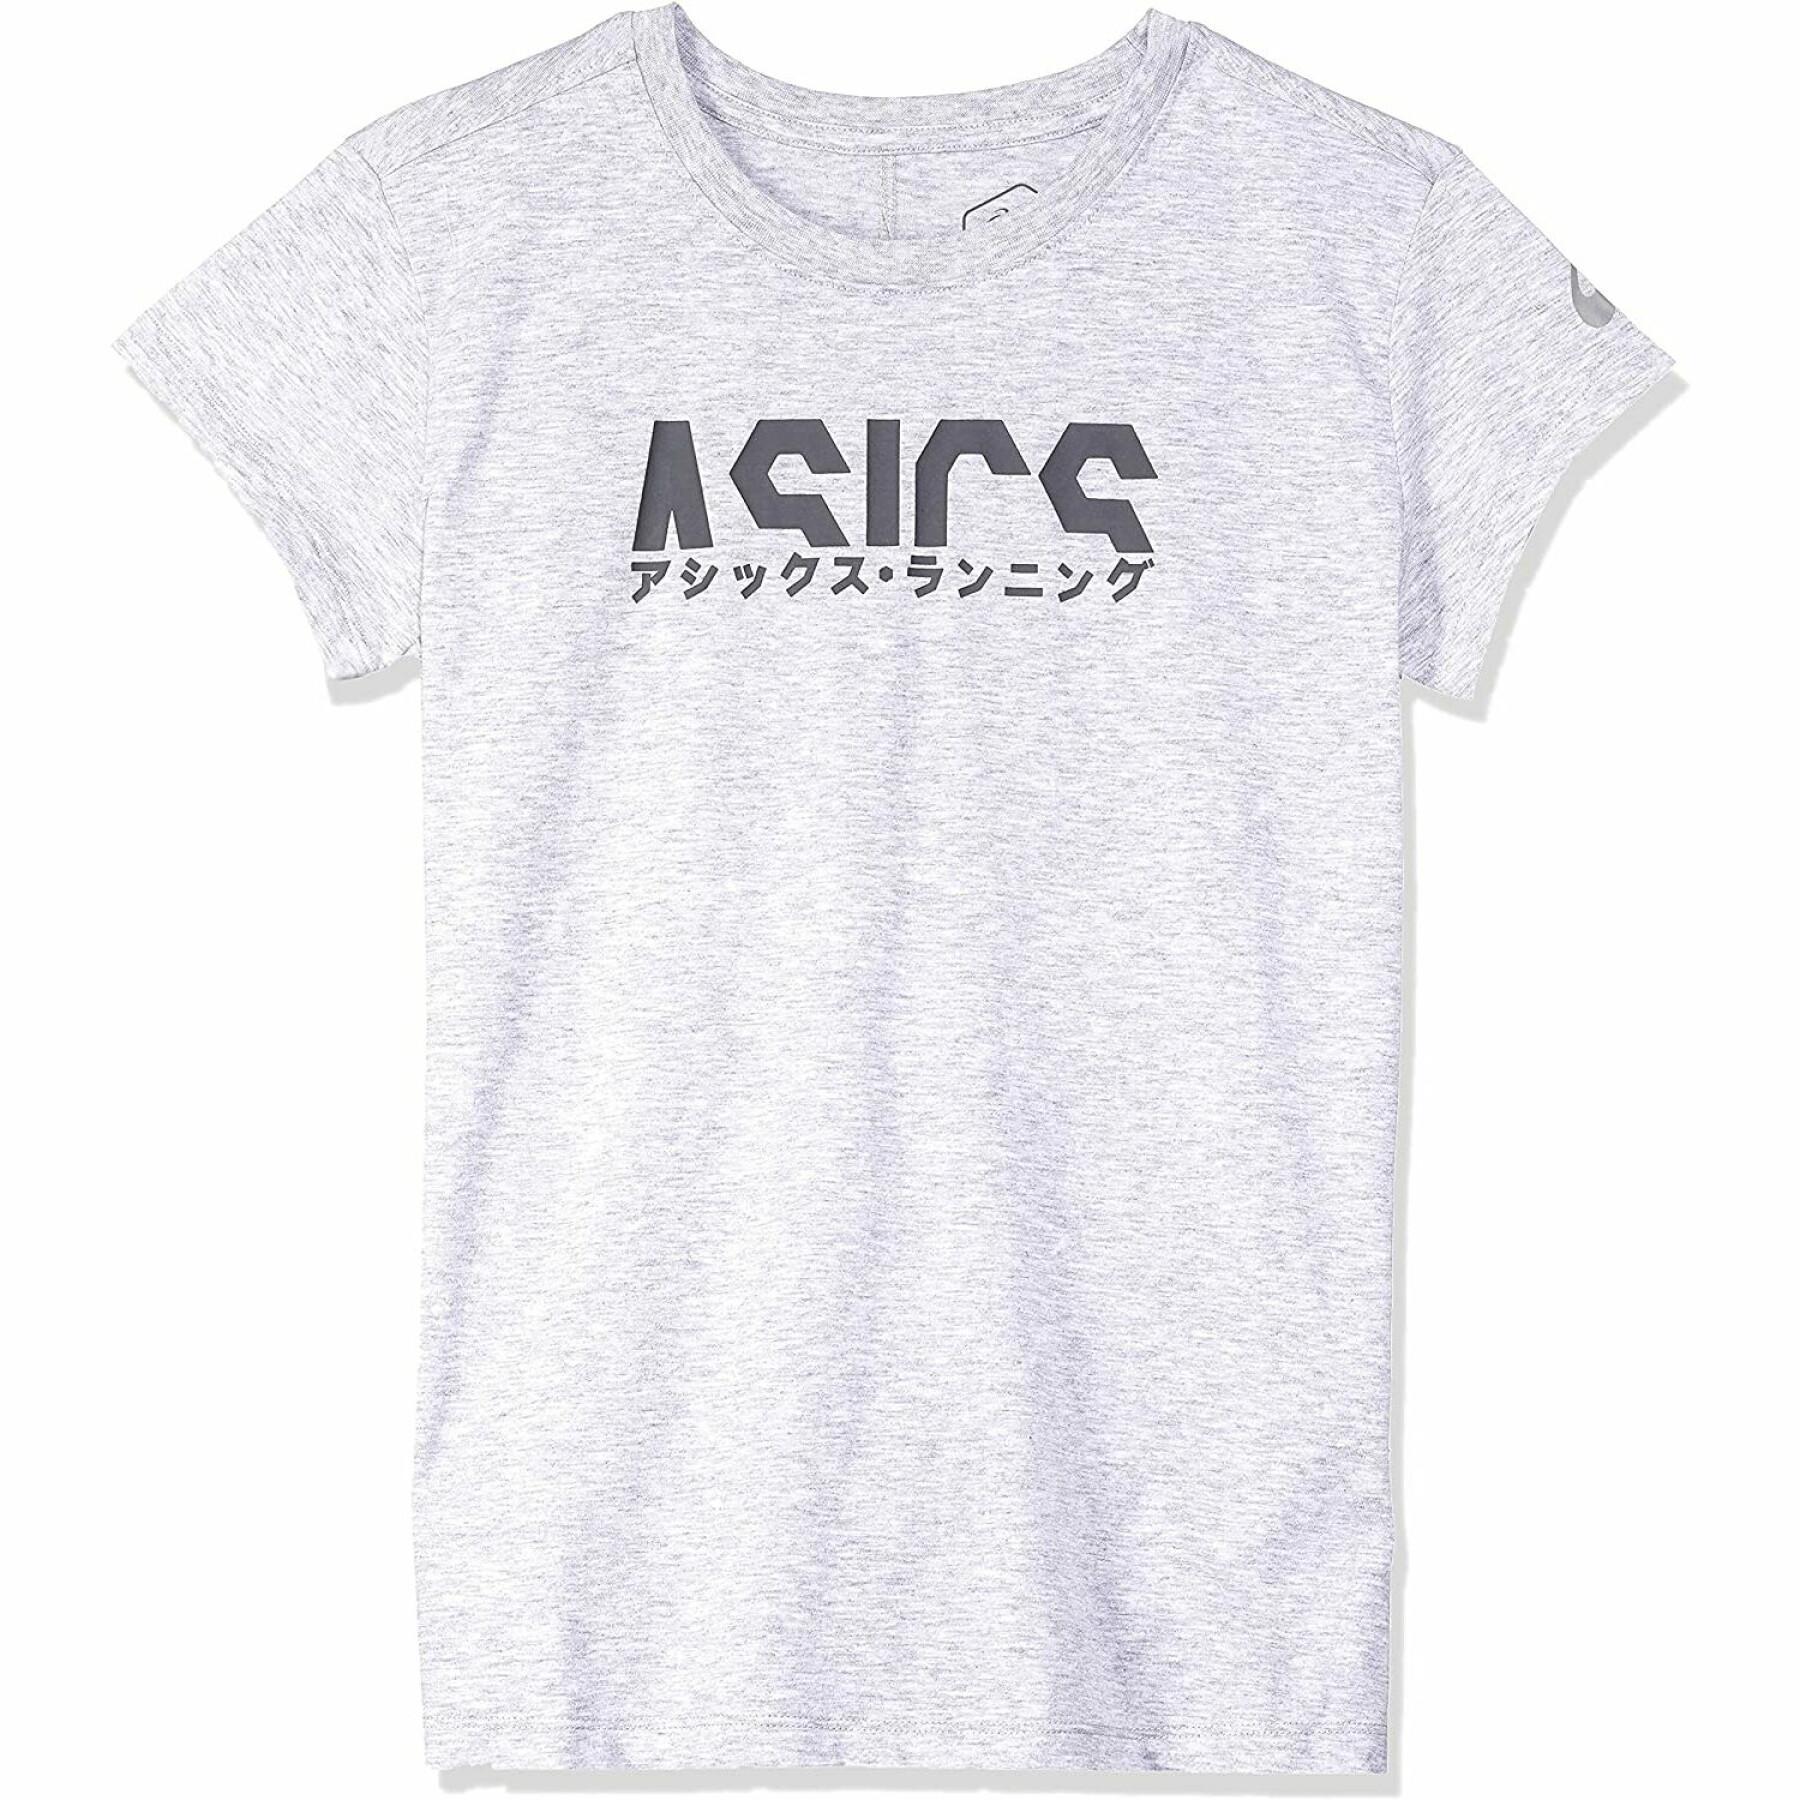 Women's T-shirt Asics Katakana Graphic